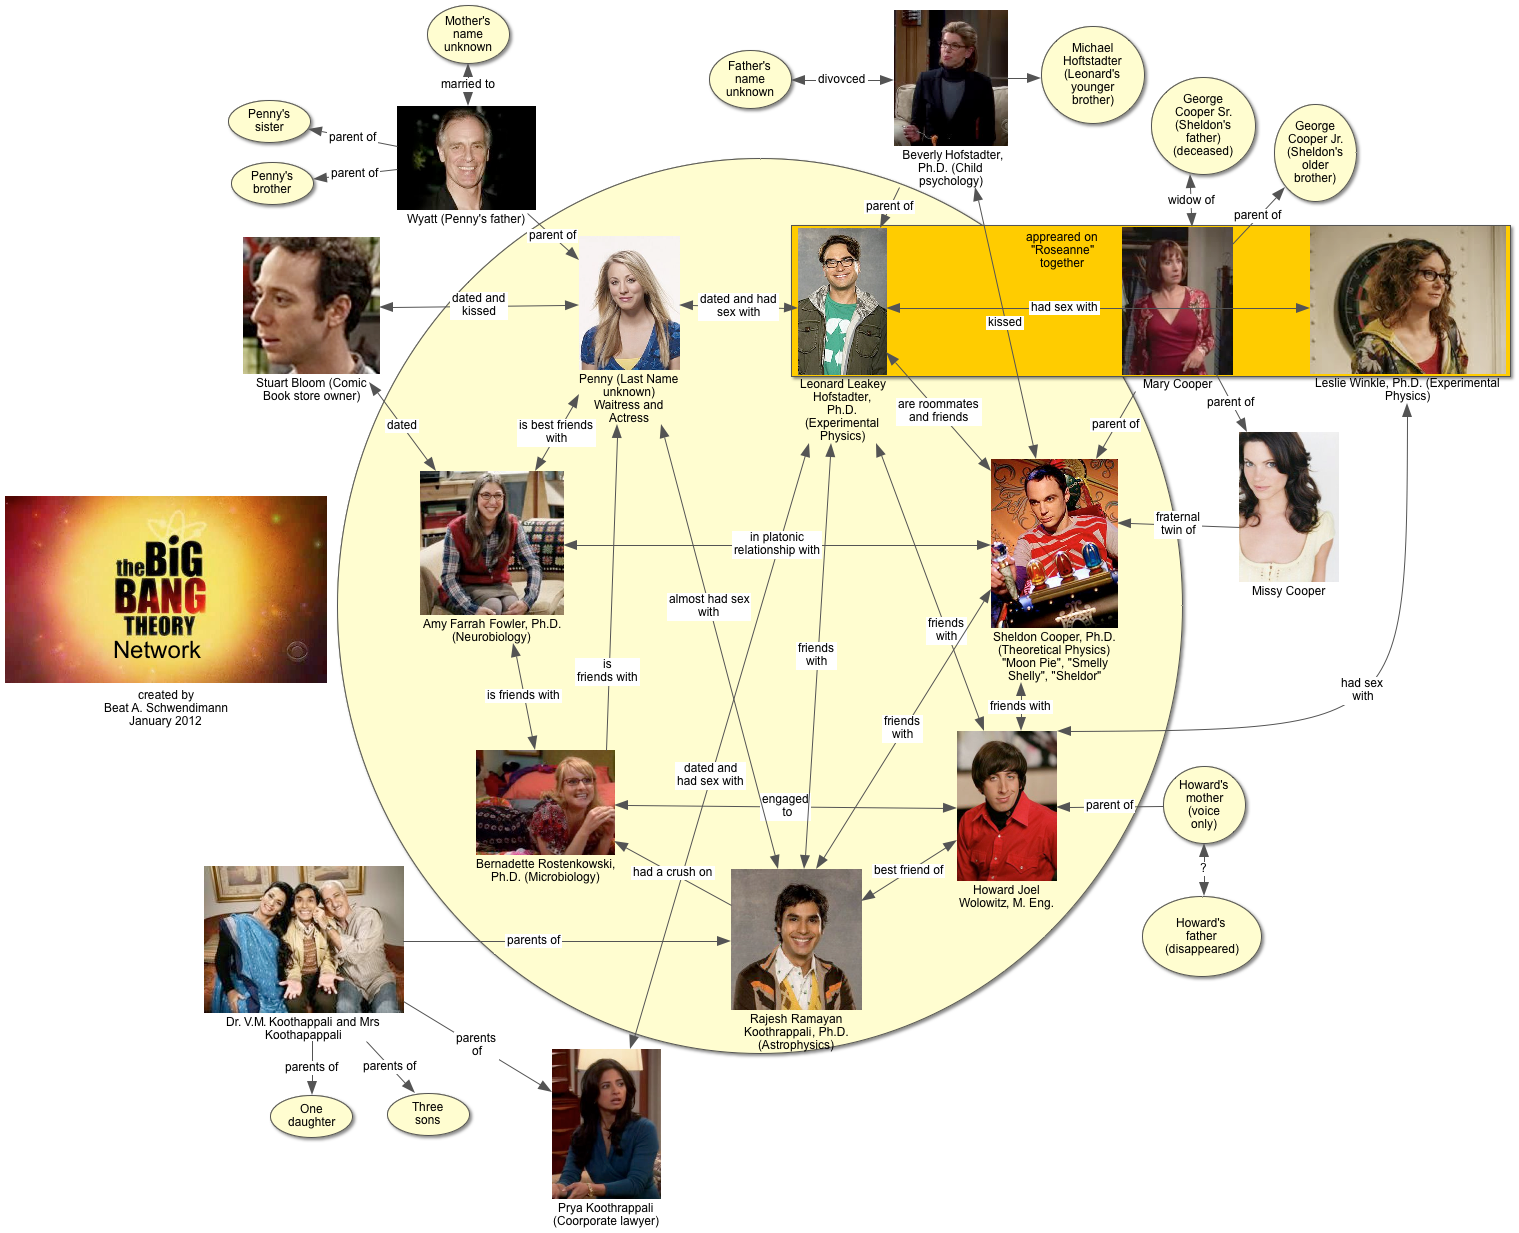 Proto-Knowledge: Big Bang Theory Network Diagram